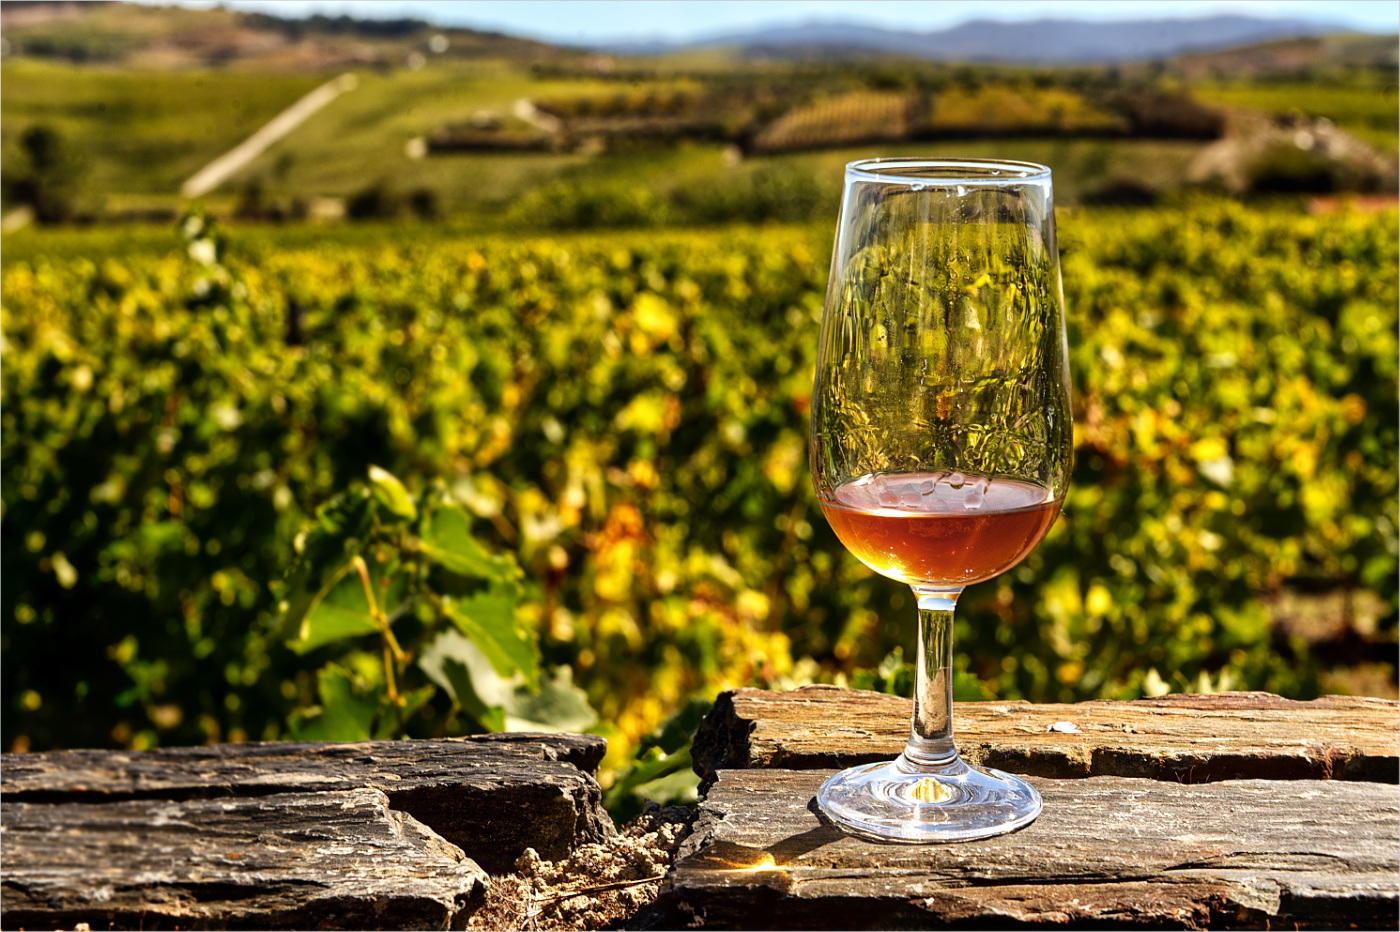 Wine and Vineyard by Richard Stauber